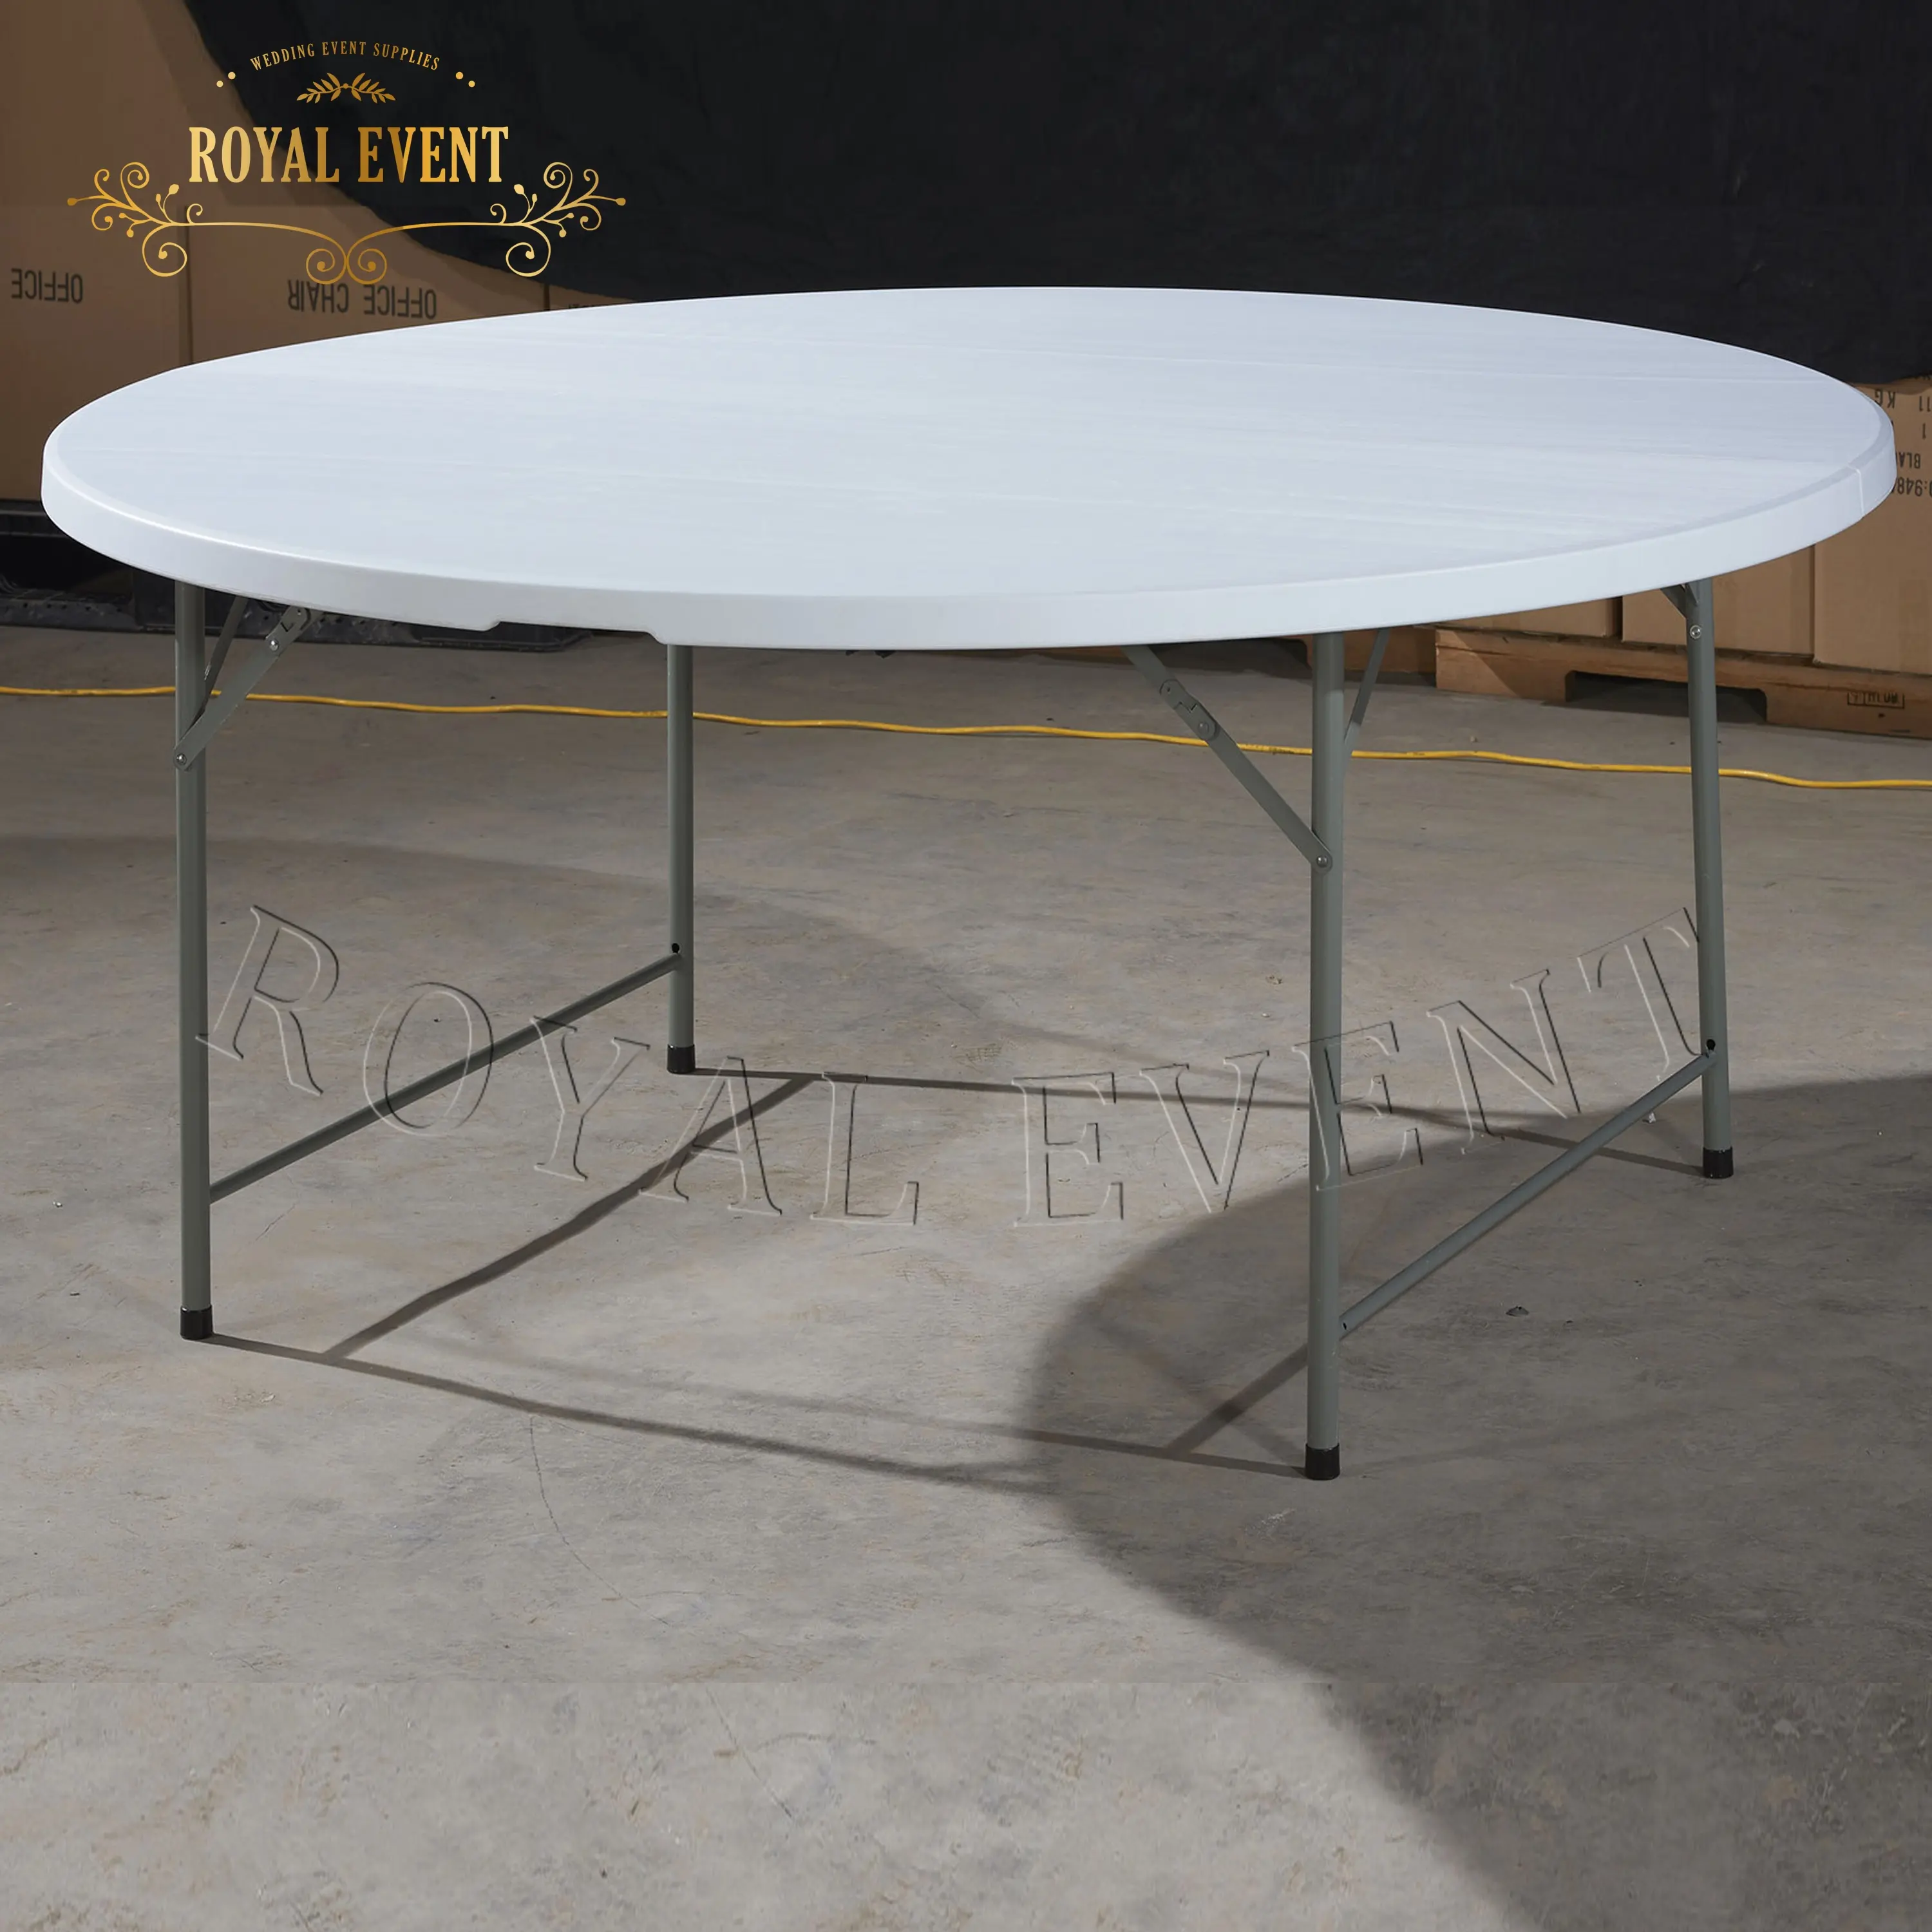 Table de banquet de mariage Foshan Offre Spéciale Tables pliantes rondes en plastique portables pour mobilier d'extérieur